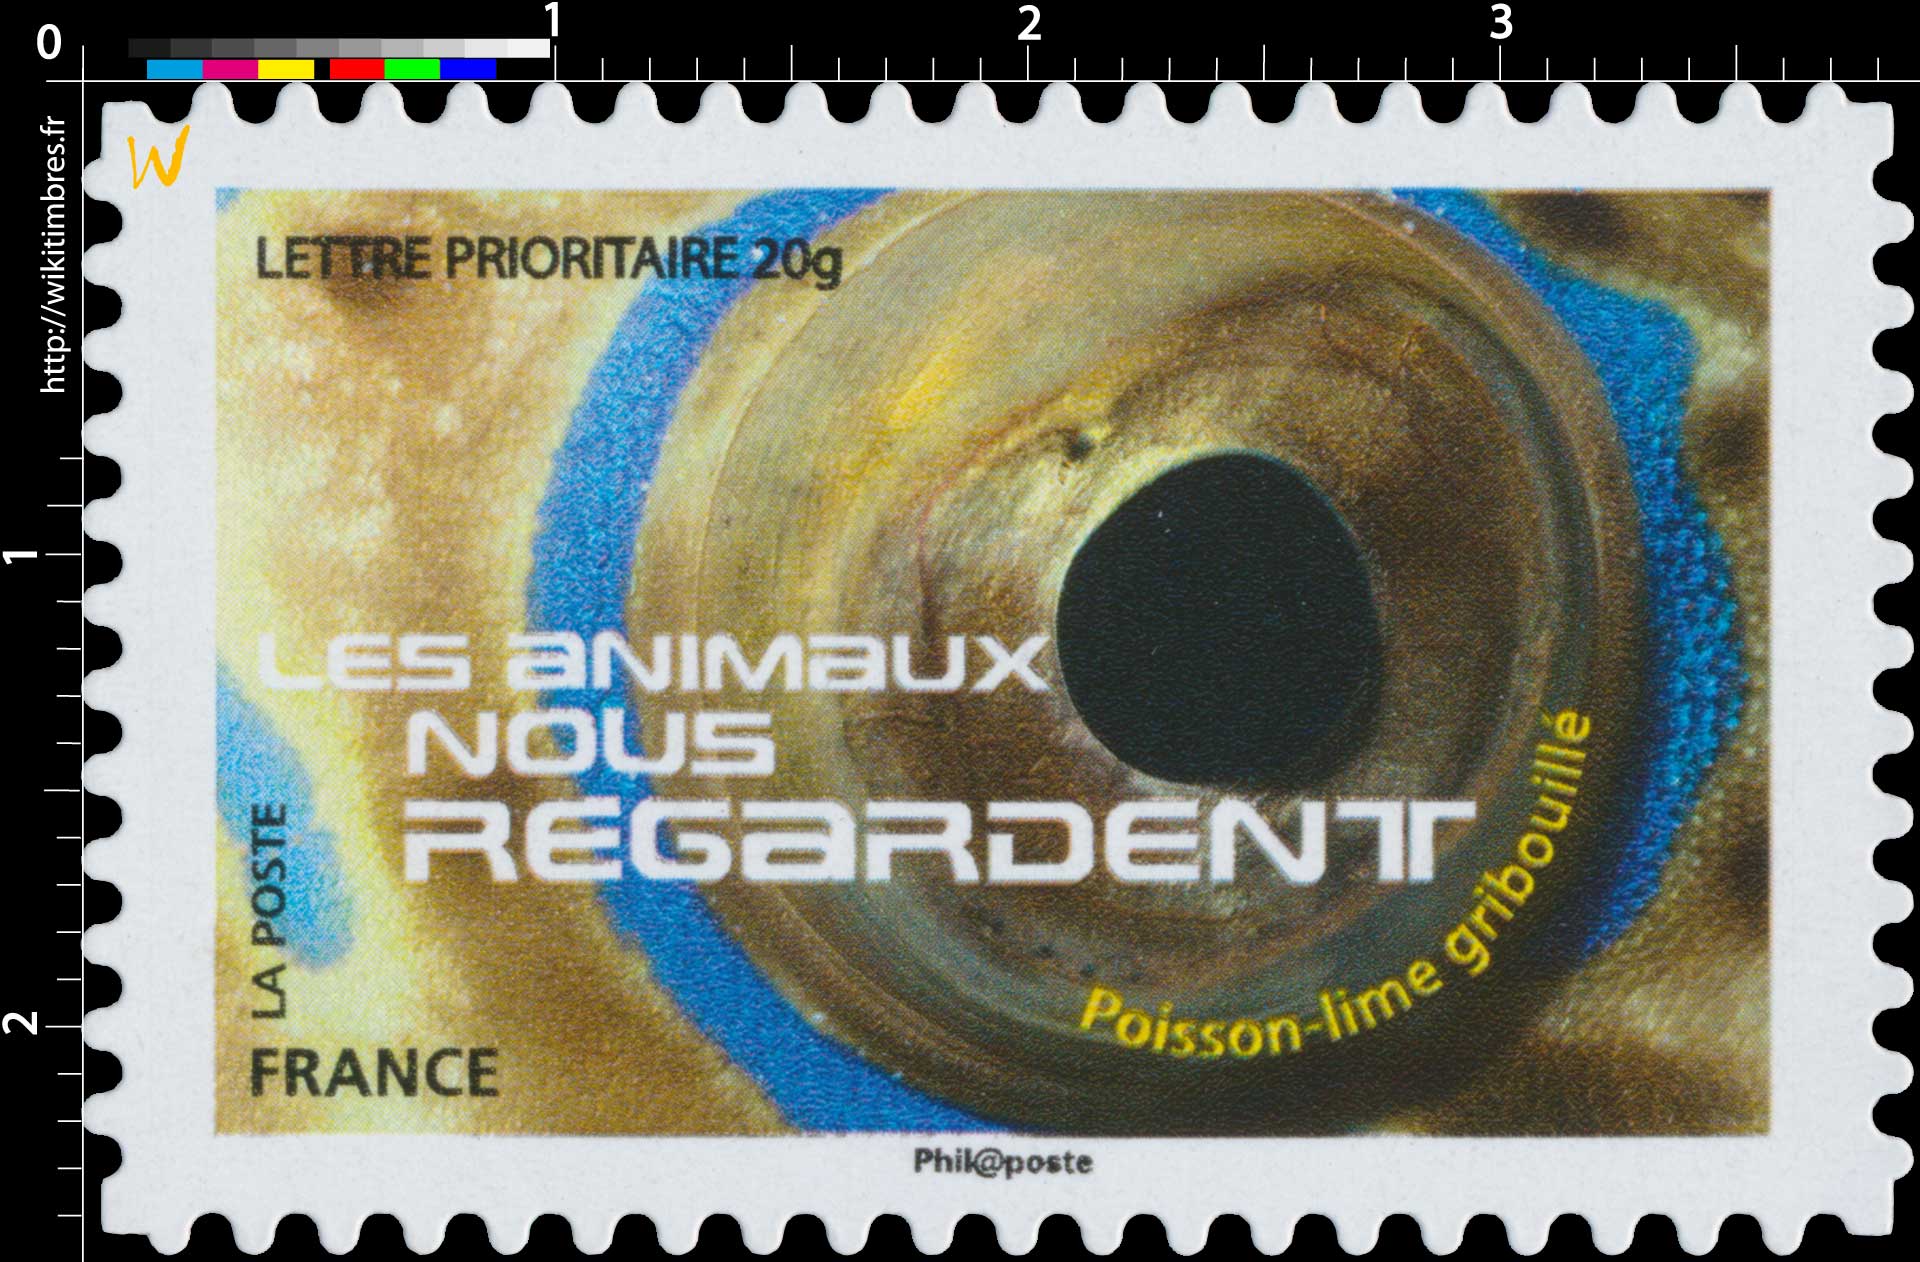 2015 LES ANIMAUX NOUS REGARDENT - Poisson-lime gribouillé 